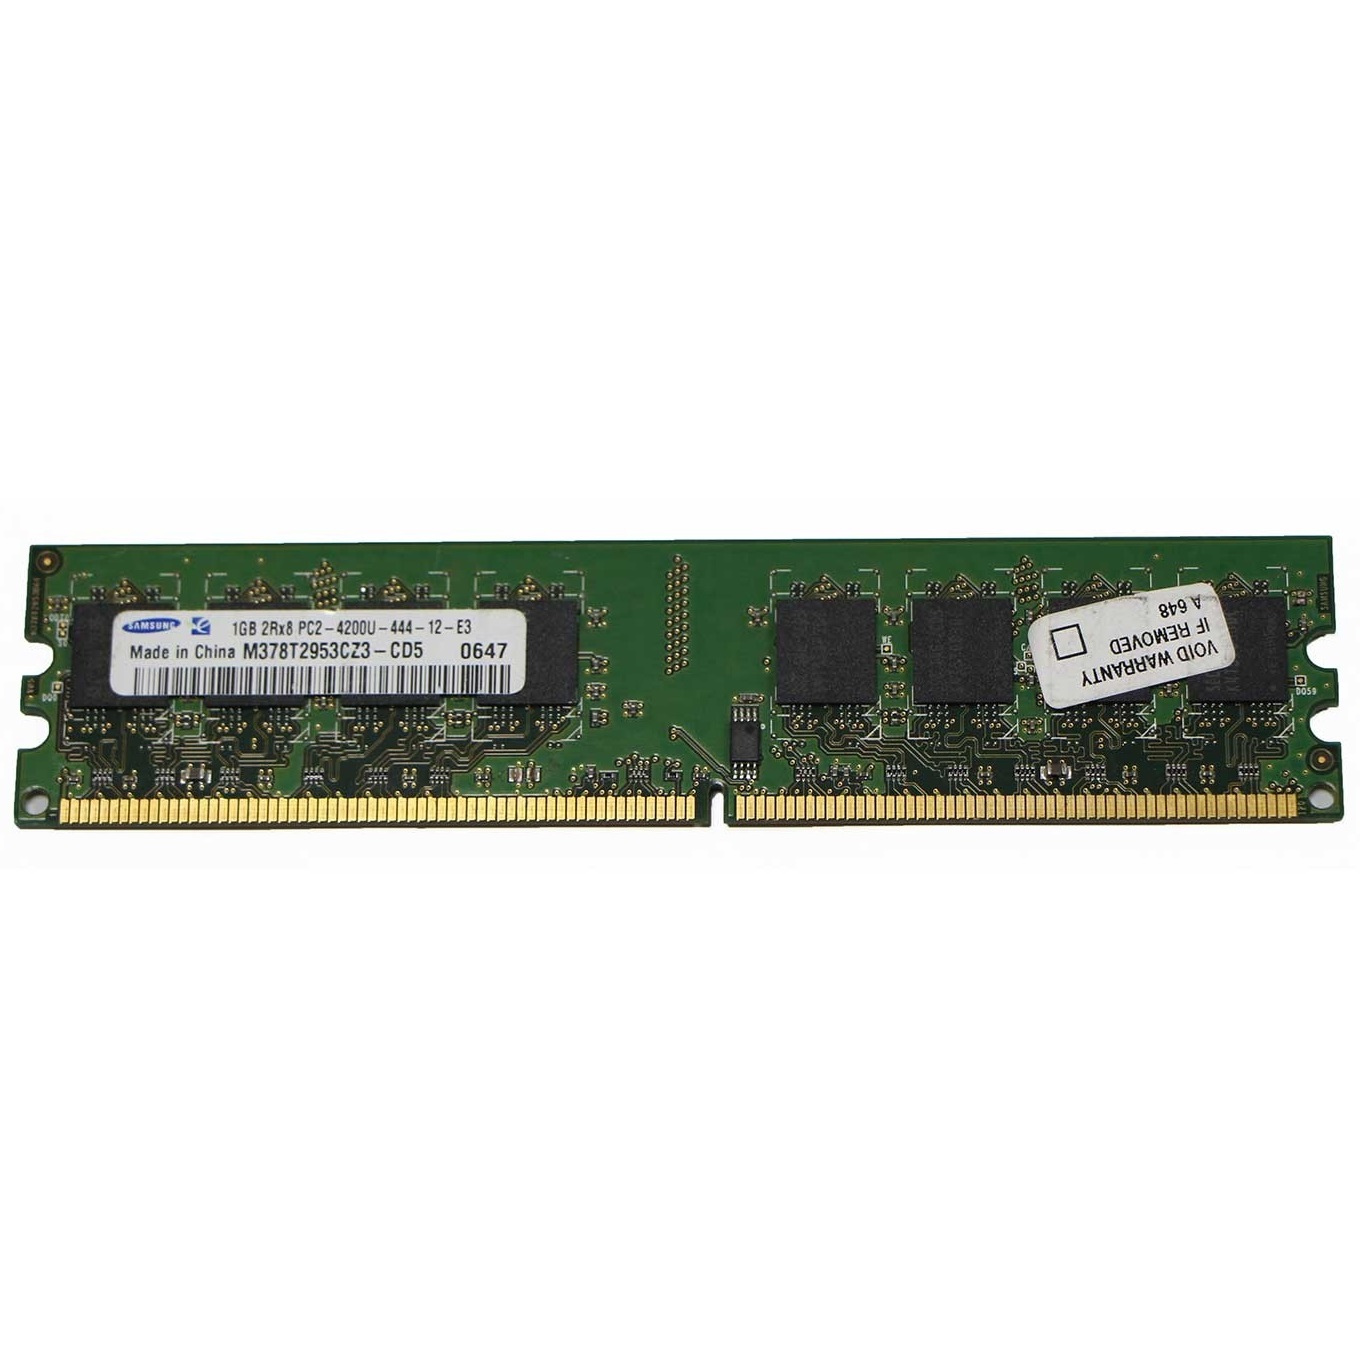 رم دسکتاپ DDR2 تک کاناله 533 مگاهرتز CL4 سامسونگ مدل M378T2953CZ3-CD5 ظرفیت 1 گیگابایت